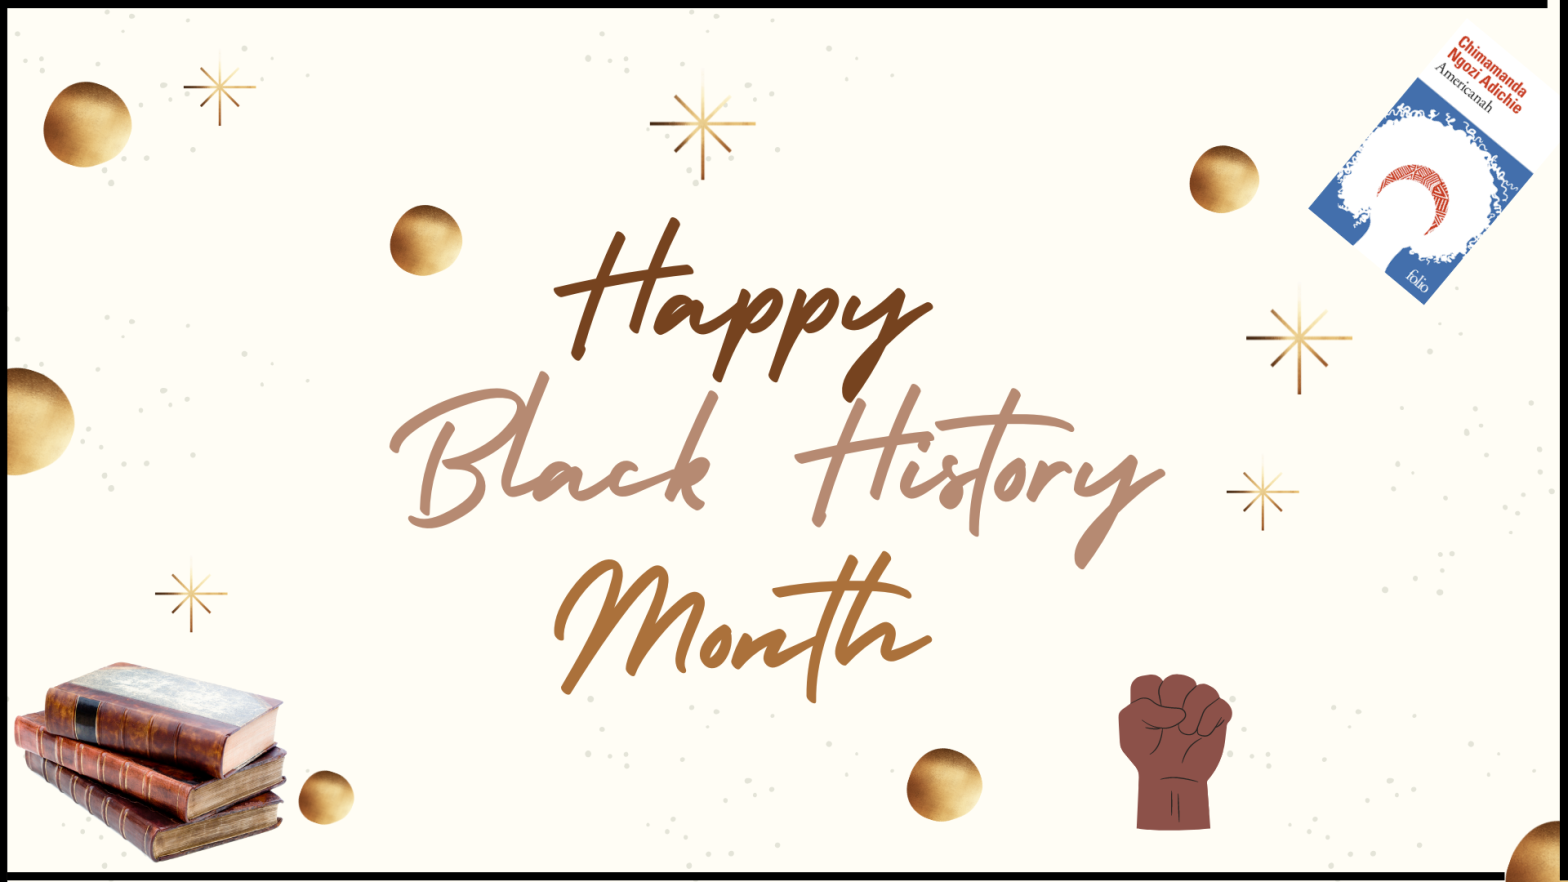 [ARTICLE] Black History Month, c’est quoi ?